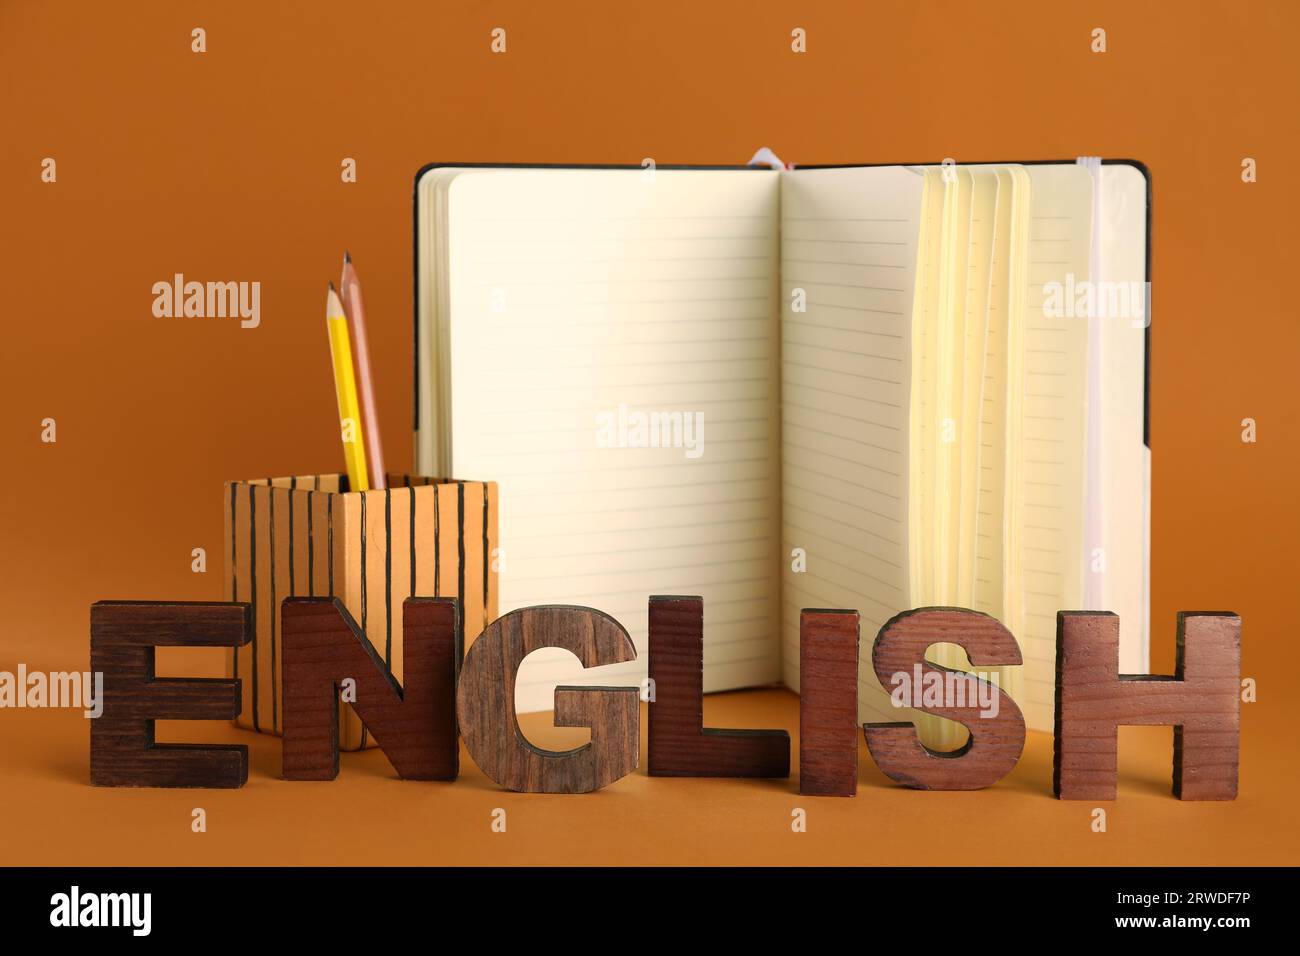 Stationery with word ENGLISH on orange background Stock Photo